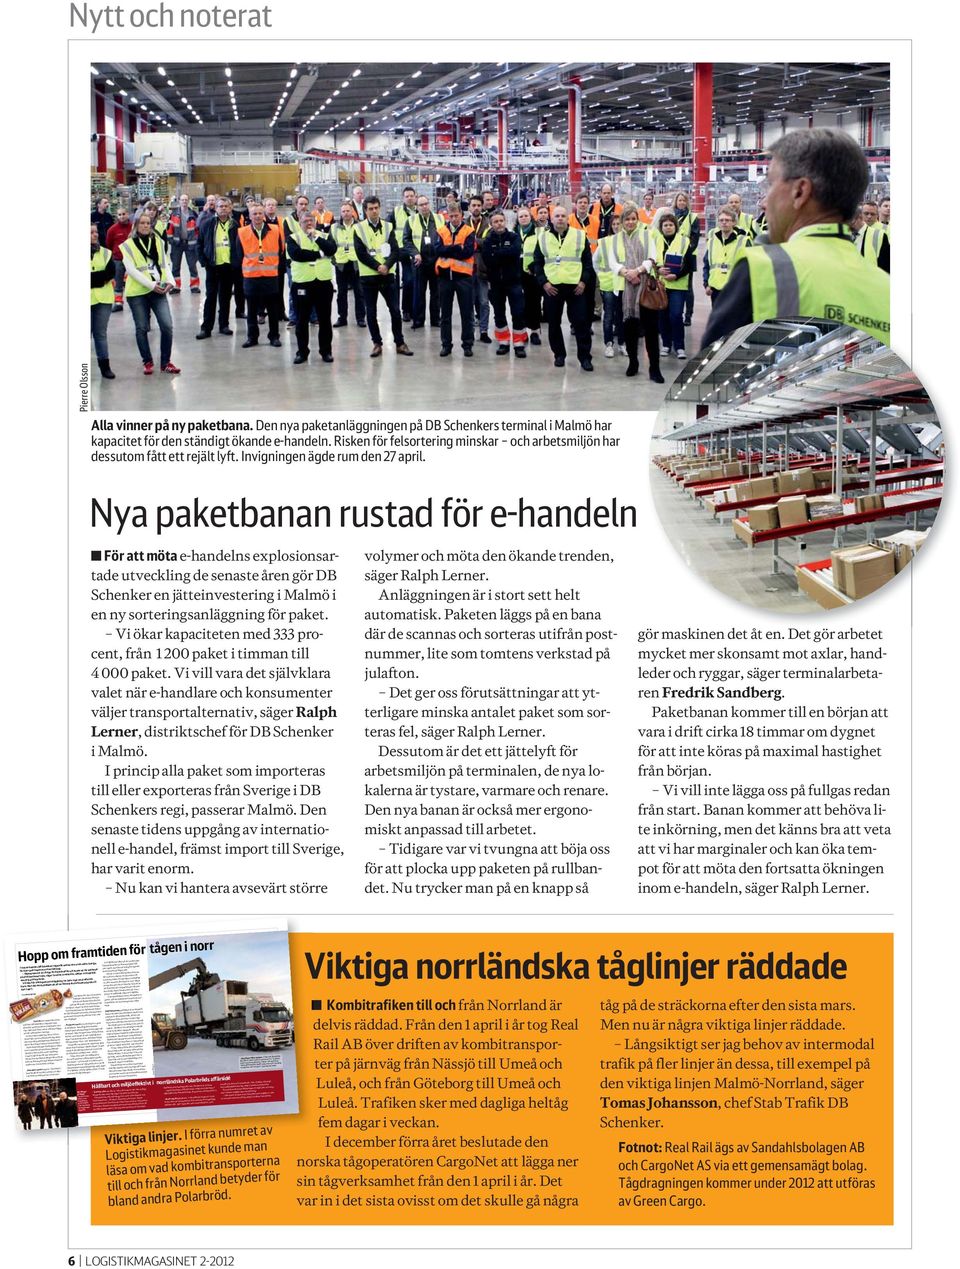 Och det är ett fåtal kunder som jag känner till som kan tänka sig att betala extra för transporter av miljöskäl, säger P-O Wåhlin. transportera våra varor på ett hållbart sätt genom Sverige.